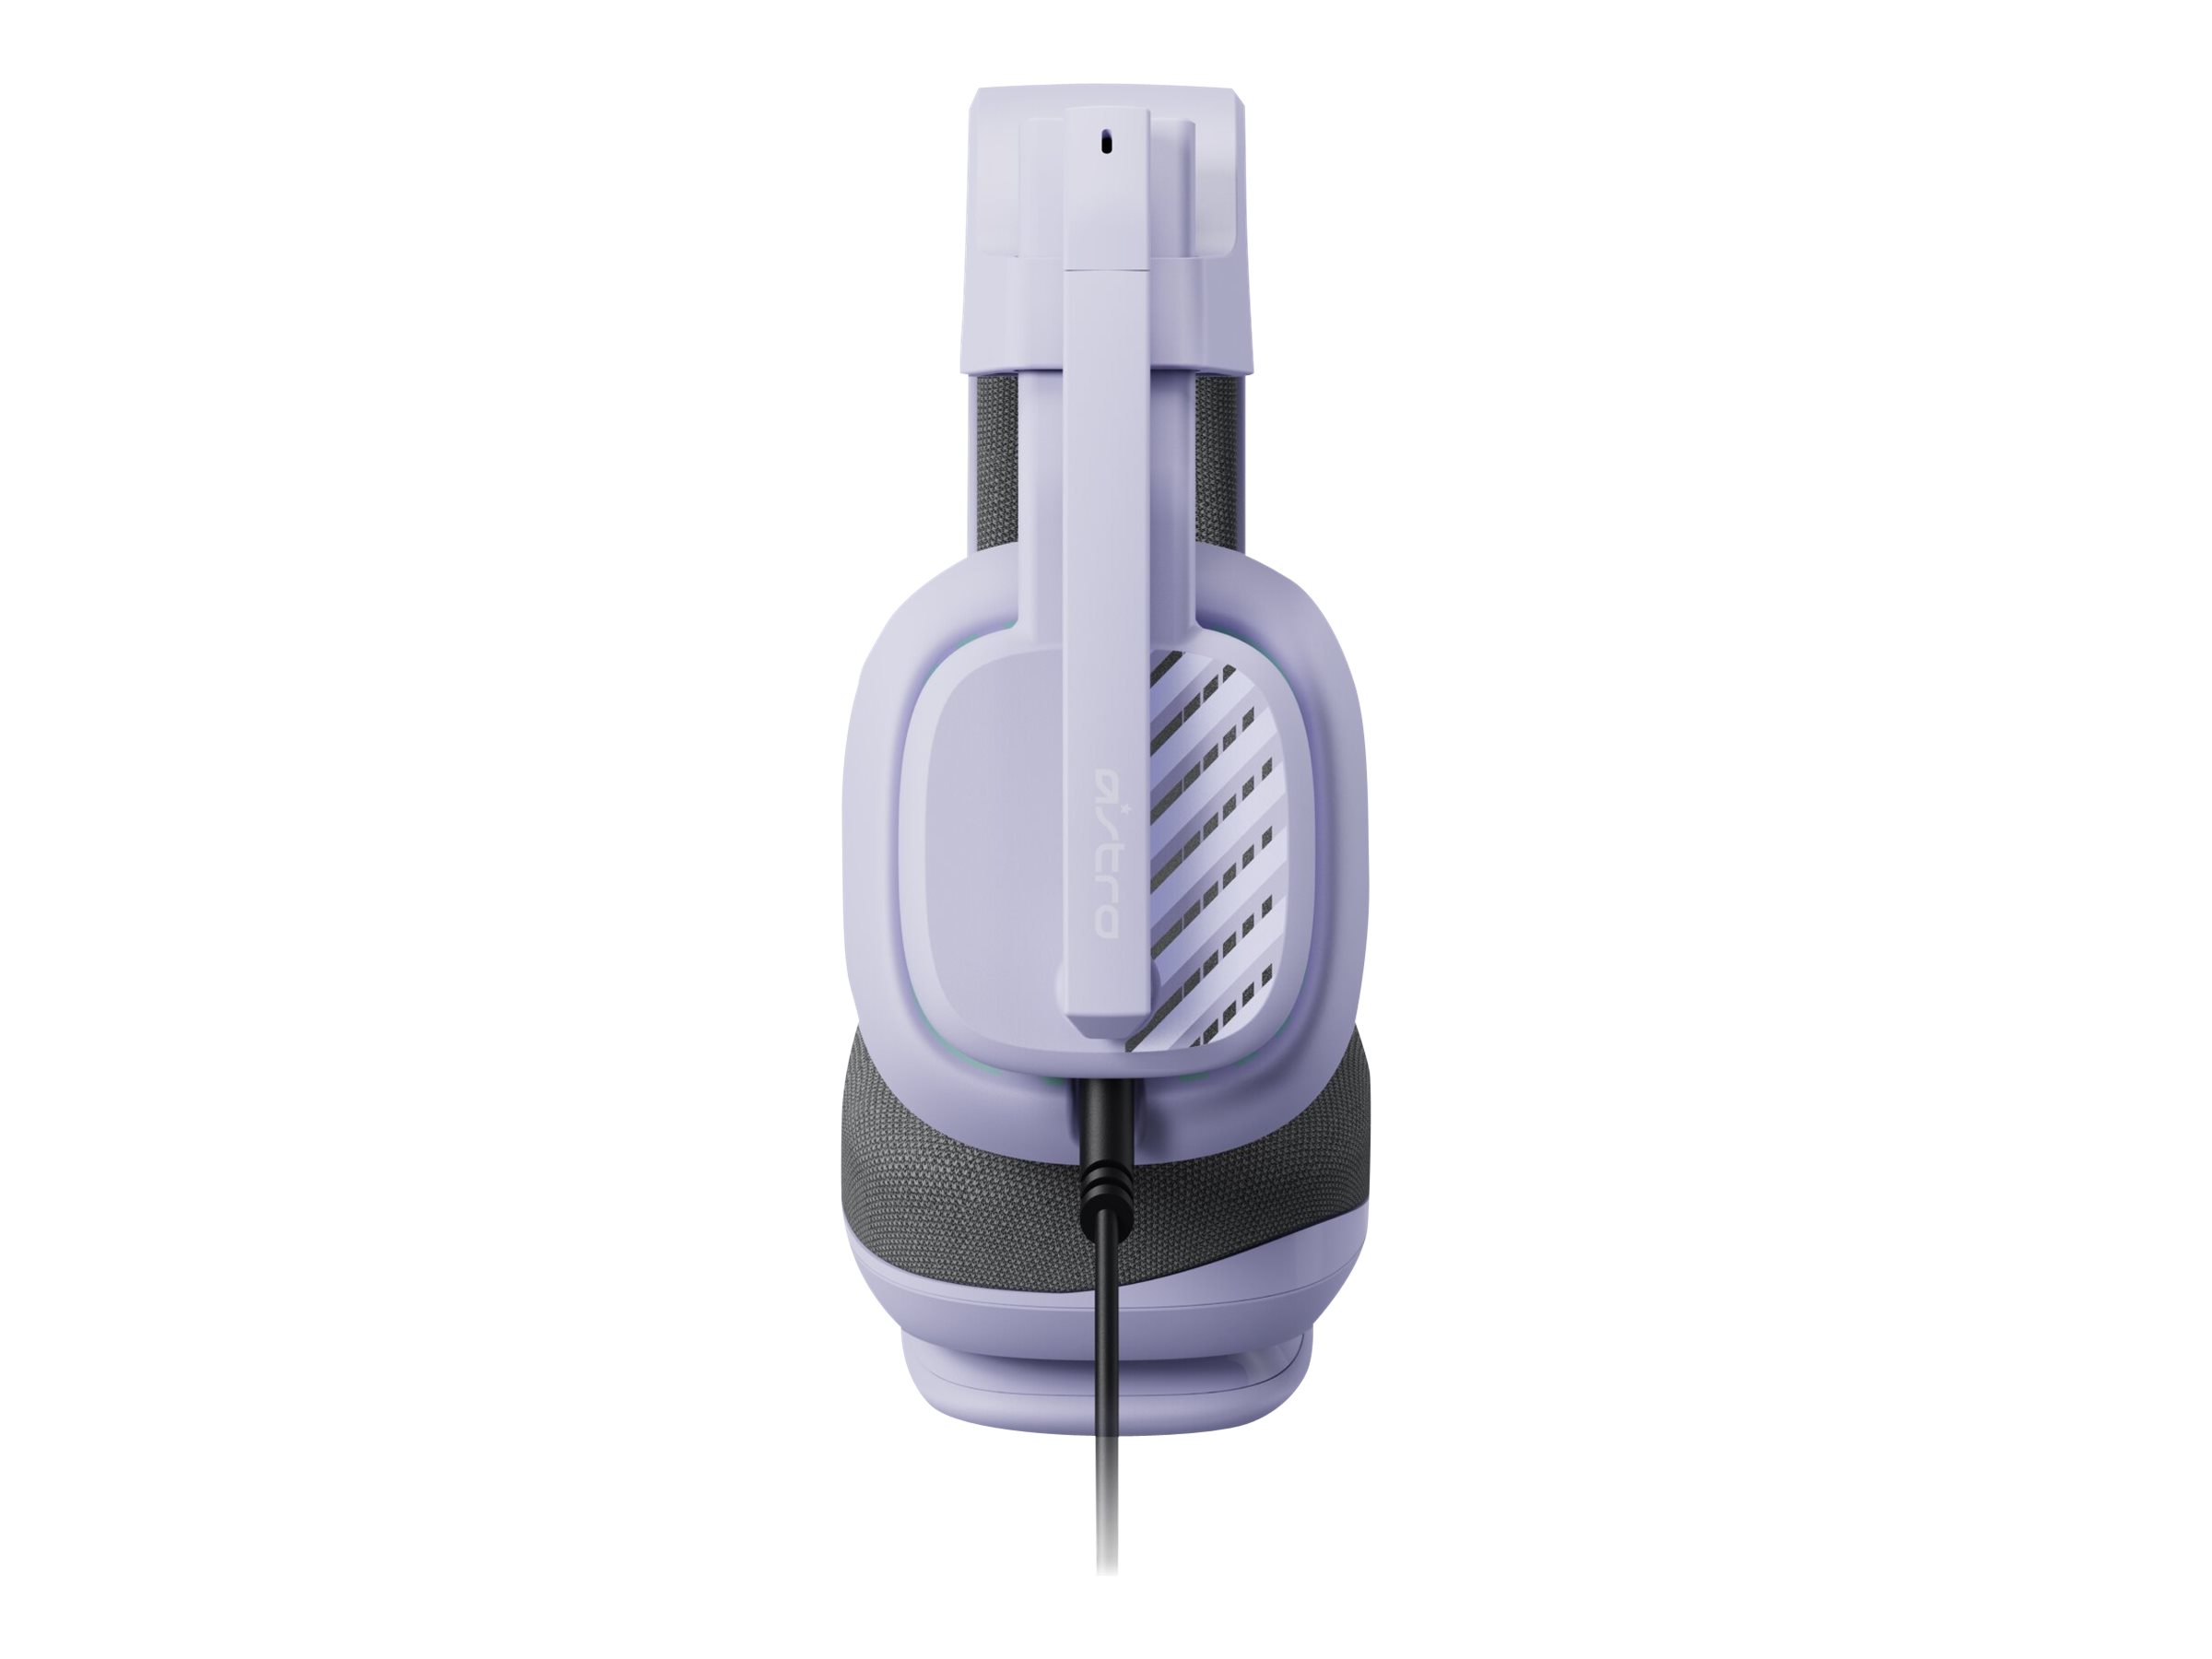 Logitech ASTRO Gaming A10 Gen 2 - Headset - ohrumschließend